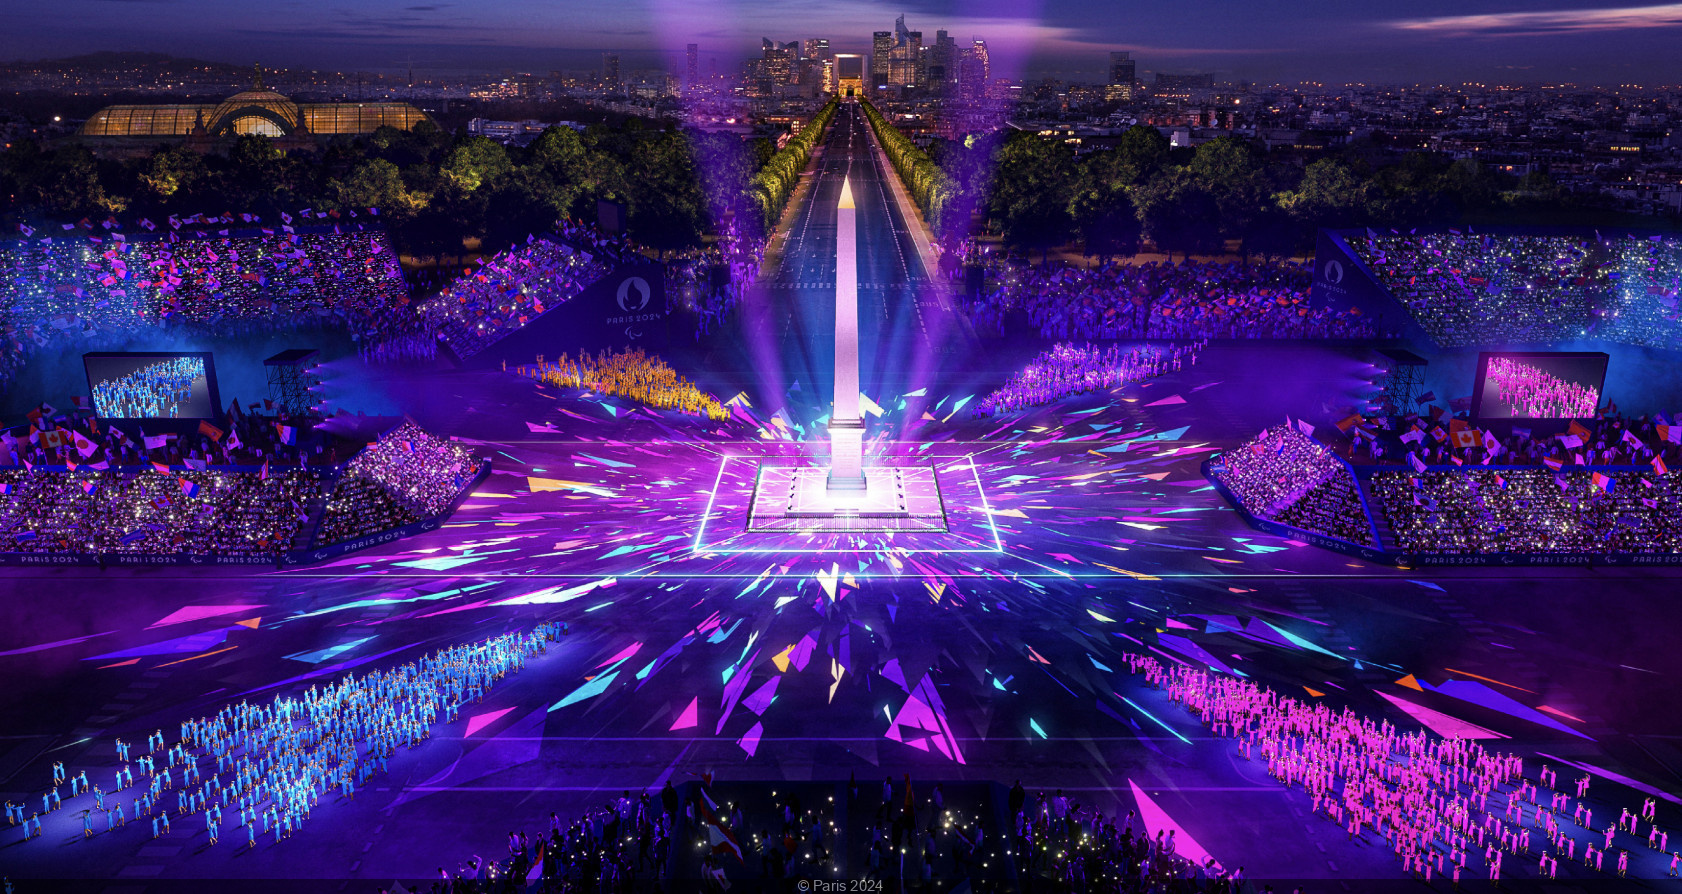 Jeux olympiques de Paris 2024 : 400 000 spectateurs attendus pour